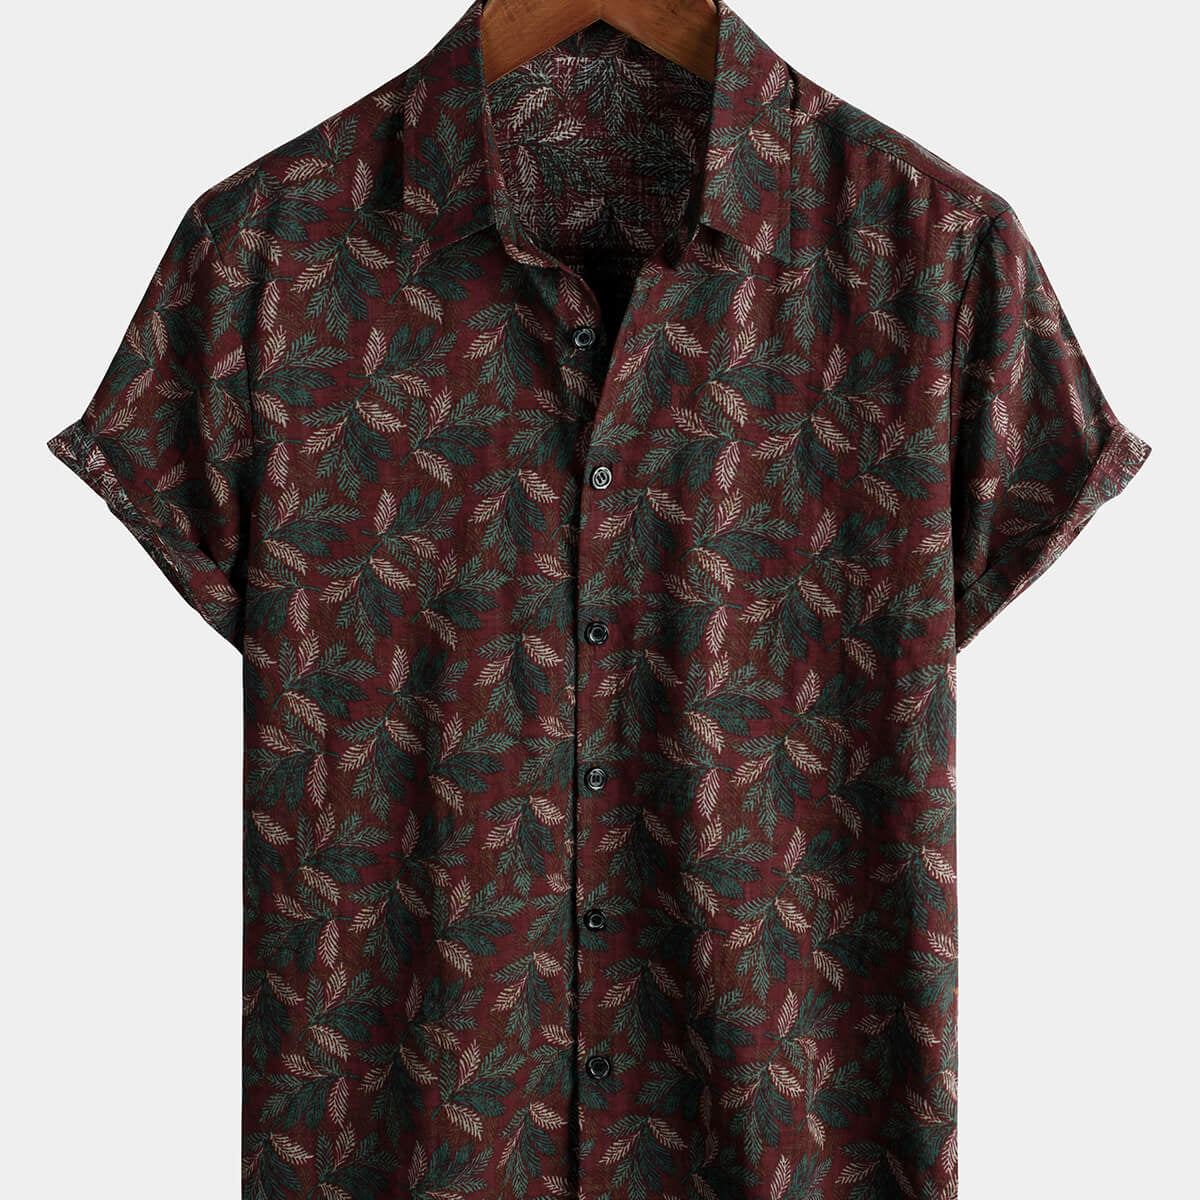 Camisa con botones de playa de verano retro burdeos de manga corta floral vintage para hombre